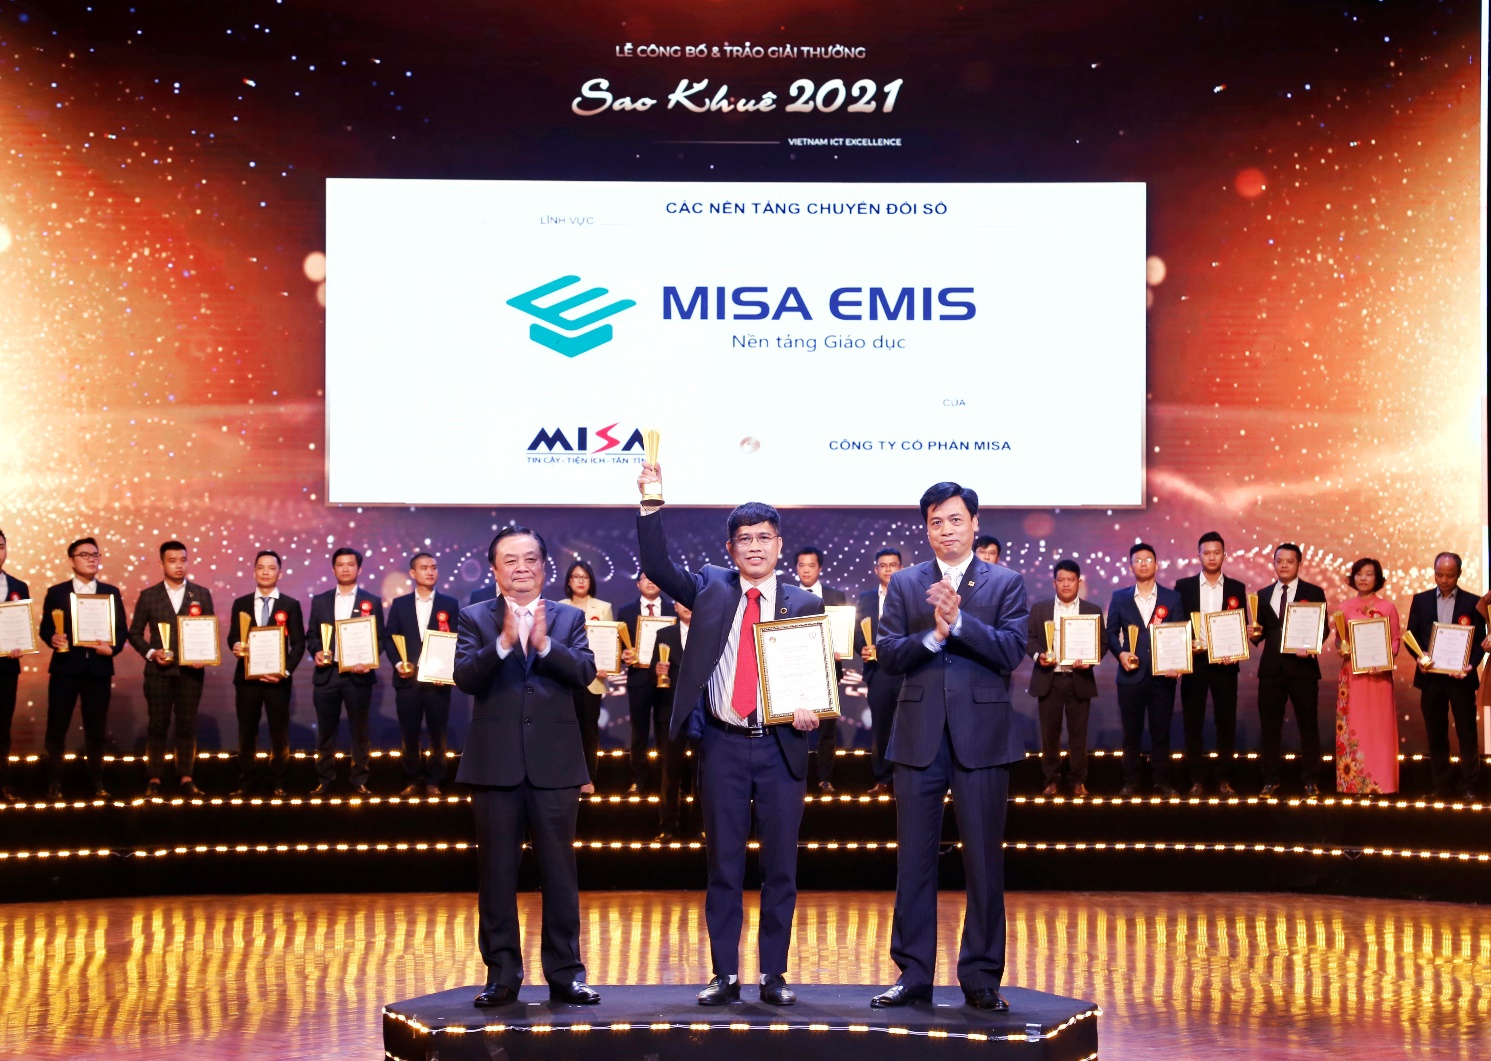 Nền tảng Giáo dục MISA EMIS hai năm liên tiếp được vinh danh tại Sao Khuê